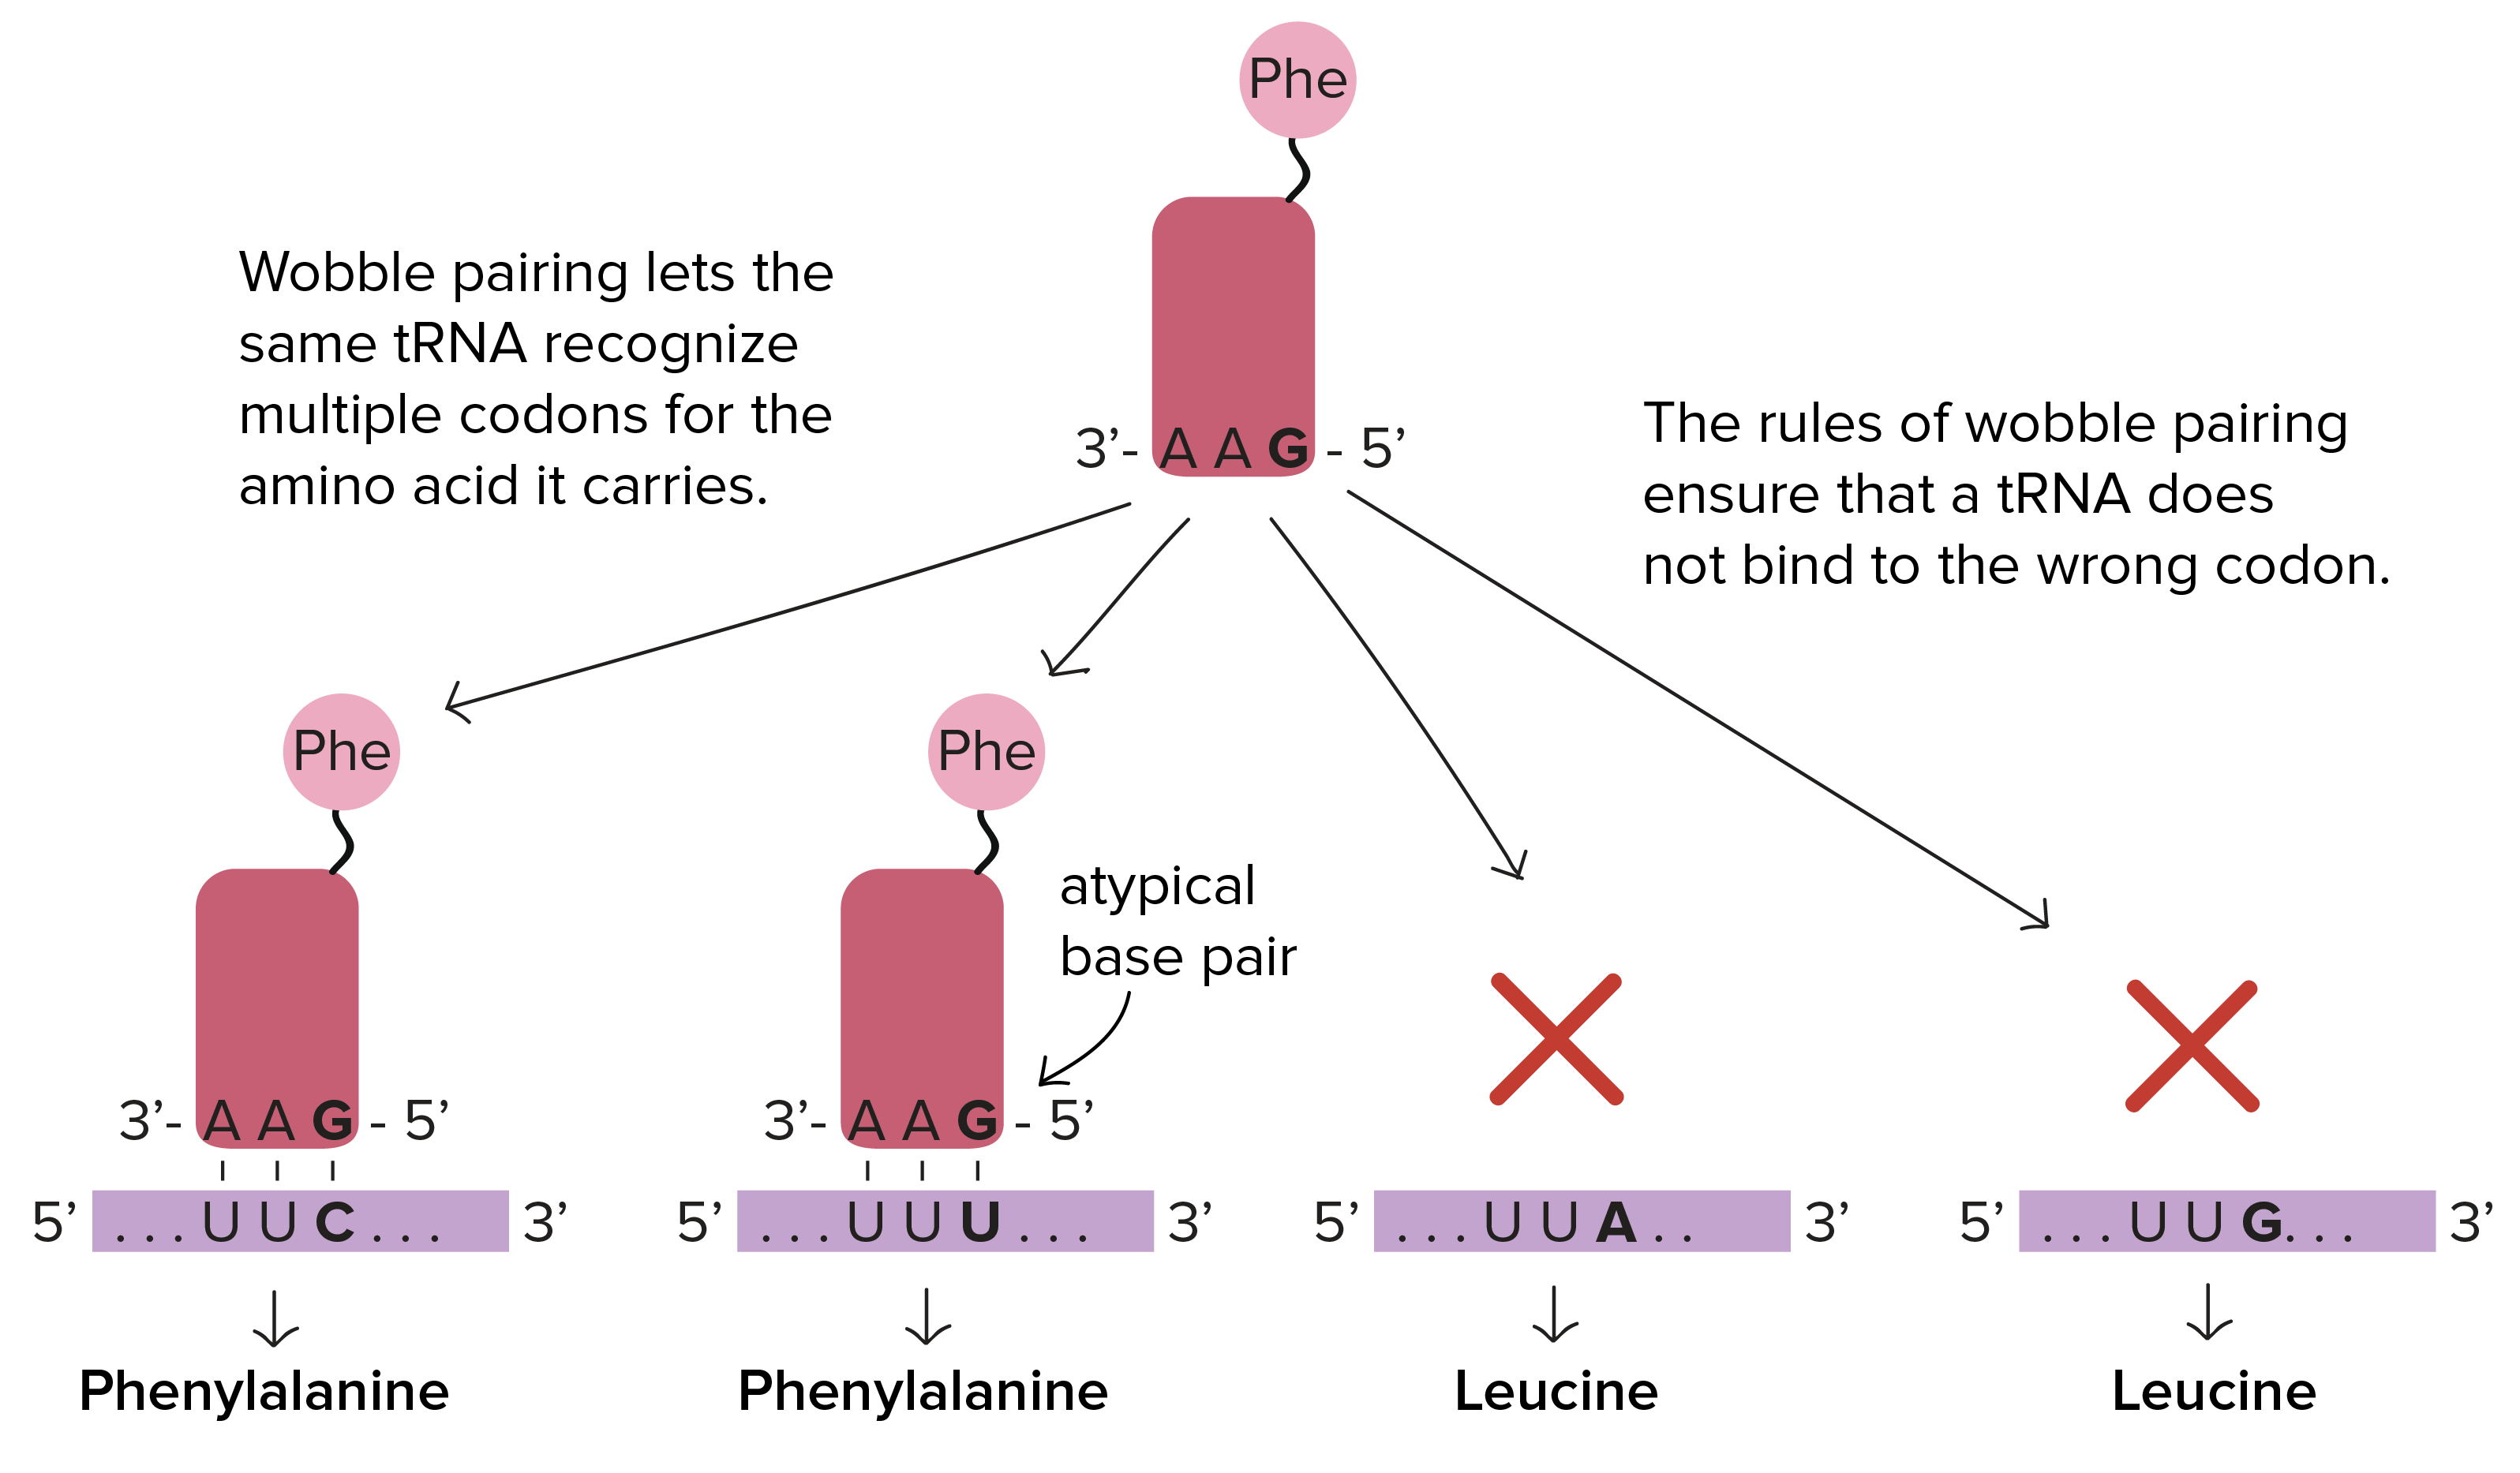 O pareamento oscilante permite que o mesmo RNAt reconheça múltiplos códons para o aminoácido que carrega. Por exemplo, o RNAt para a fenilalanina tem um anticódon de 3'-AA**G**-5'. Ele pode parear com os códons de RNAm 5'-UU**C**-3' ou 5'-UU**U**-3' (ambos os quais são códons que especificam a fenilalanina). O RNAt pode se ligar a ambos os códons porque consegue formar tanto um par de base normal  com a terceira posição do códon (códon 5'-UU**C**-3' com anticódon 3'-AA**G**-5') quanto um par de base atípico com a terceira posição do códon (códon 5'-UU**U**-3' com anticódon 3'-AA**G**-5').

As regras do pareamento oscilante asseguram que um RNAt não se ligue a um códon errado. O RNAt para a fenilalanina tem o anticódon 3'-AA**G**-5', o qual consegue parear com dois códons de fenilalanina (descritos acima), ma não com os códons 5'-UU**A**-3' ou 5'-UU**G**-3'. Esses códons especificam a leucina e não a fenilalanina,  portanto esse é um exemplo de como as regras de pareamento oscilante permitem que um único RNAt cubra múltiplos códons para o mesmo aminoácido, mas não introduz nenhuma incerteza sobre qual aminoácido será entregue a um códon em particular.